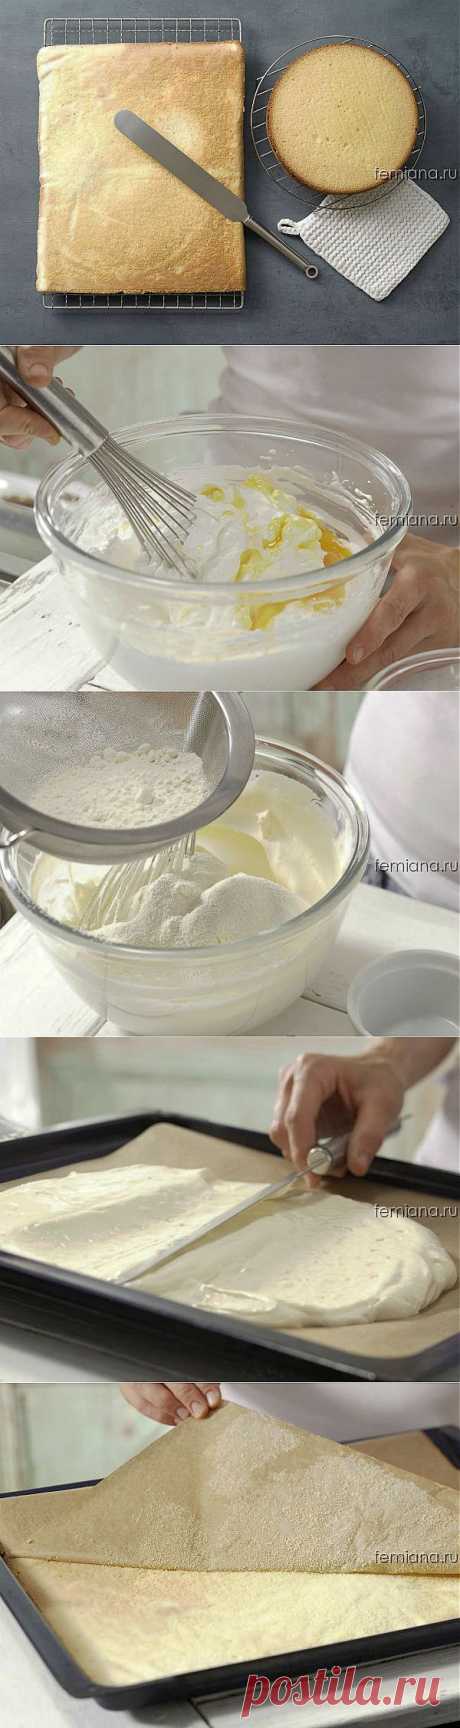 Мастер-класс: как приготовить лучшее бисквитное тесто - пошаговый фото рецепт | FEMIANA